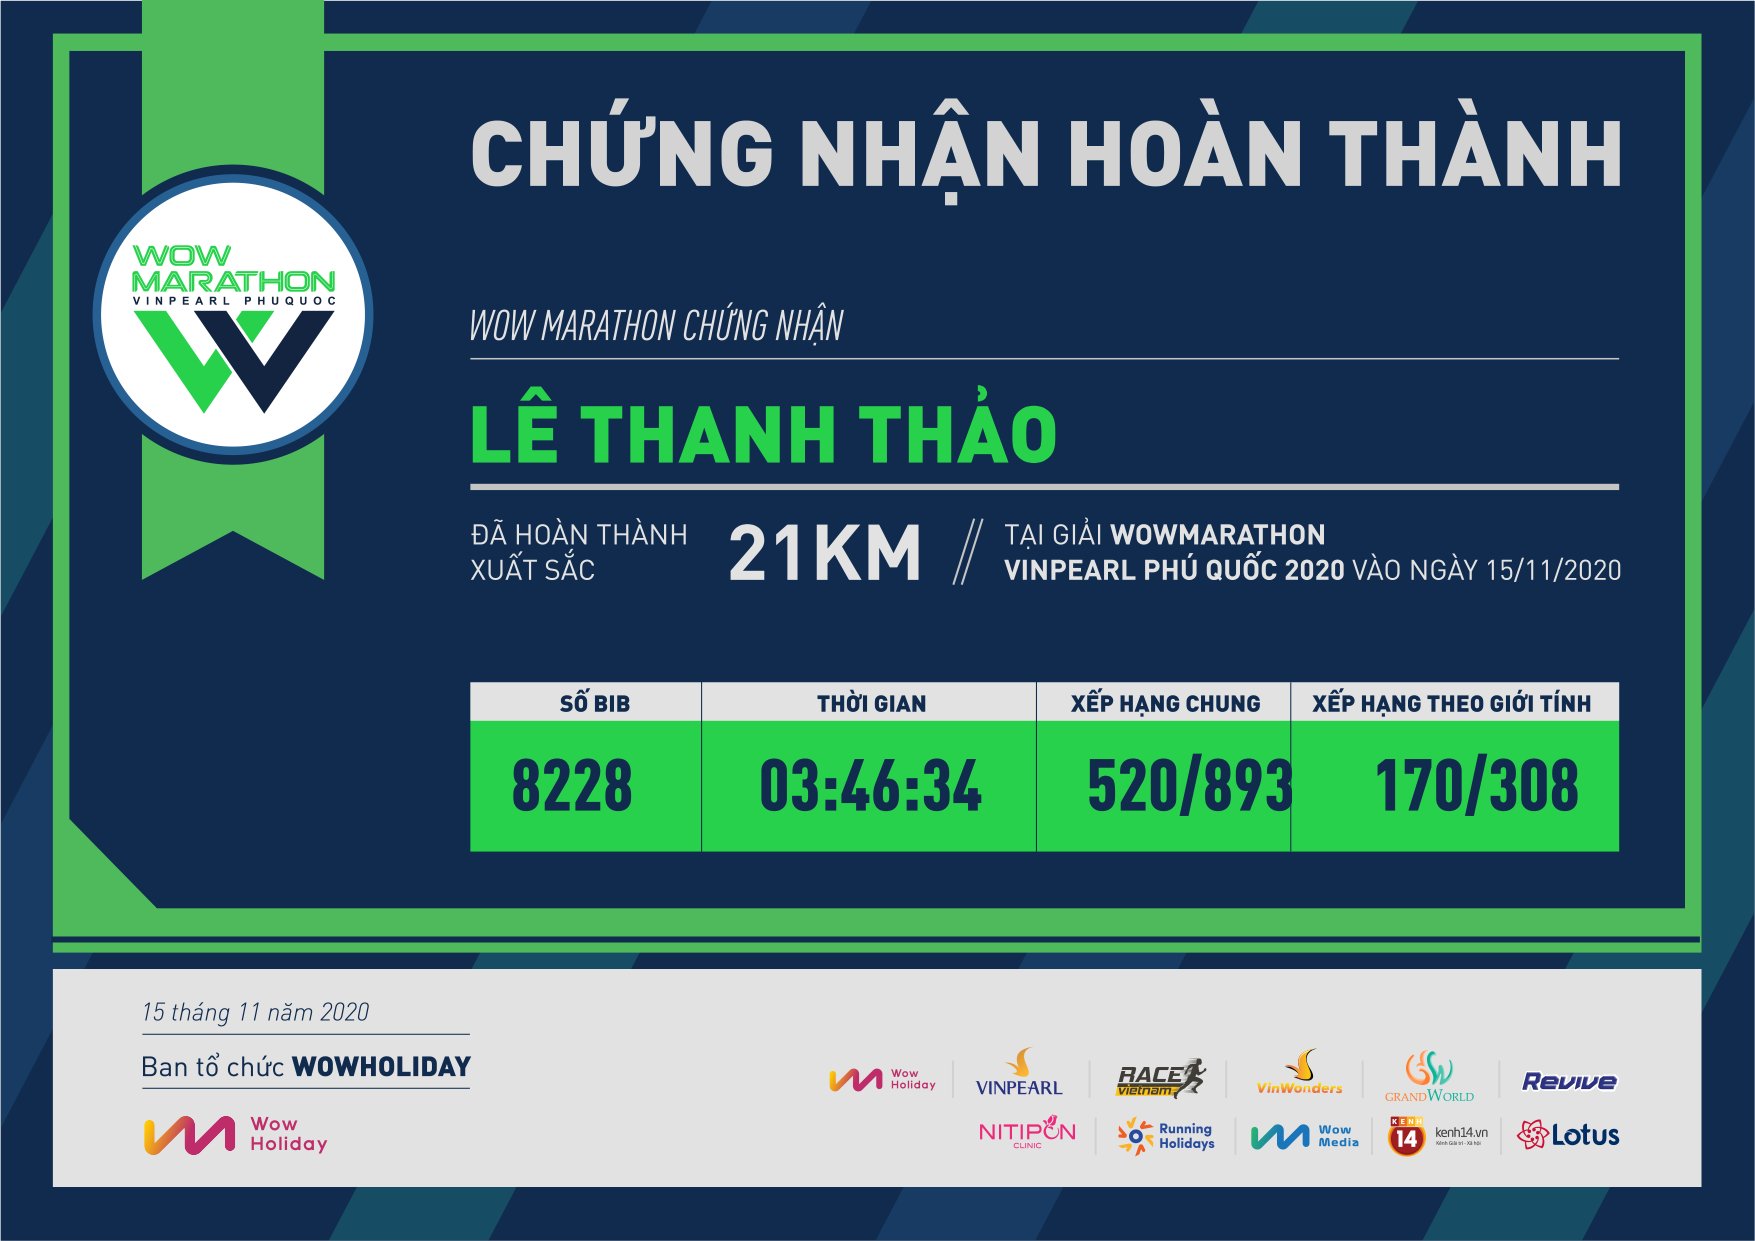 8228 - Lê Thanh Thảo